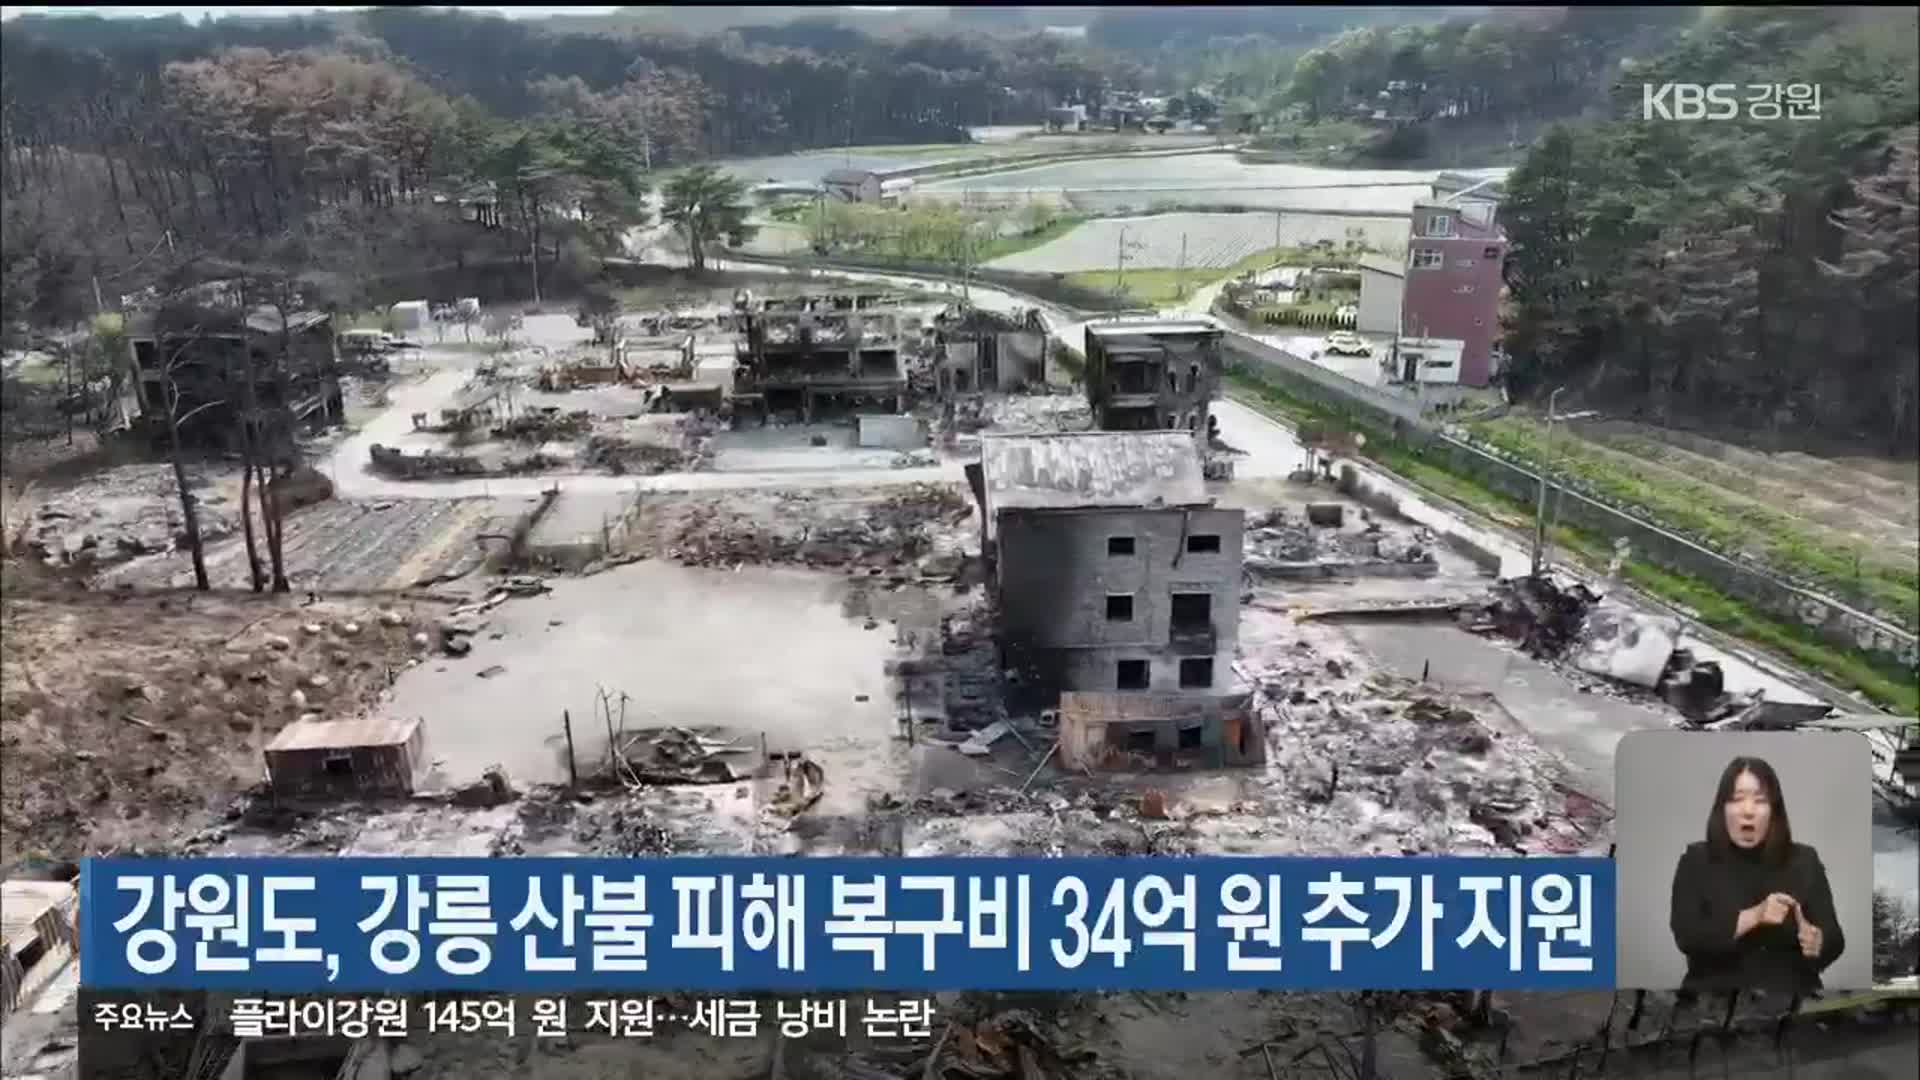 강원도, 강릉 산불 피해 복구비 34억 원 추가 지원